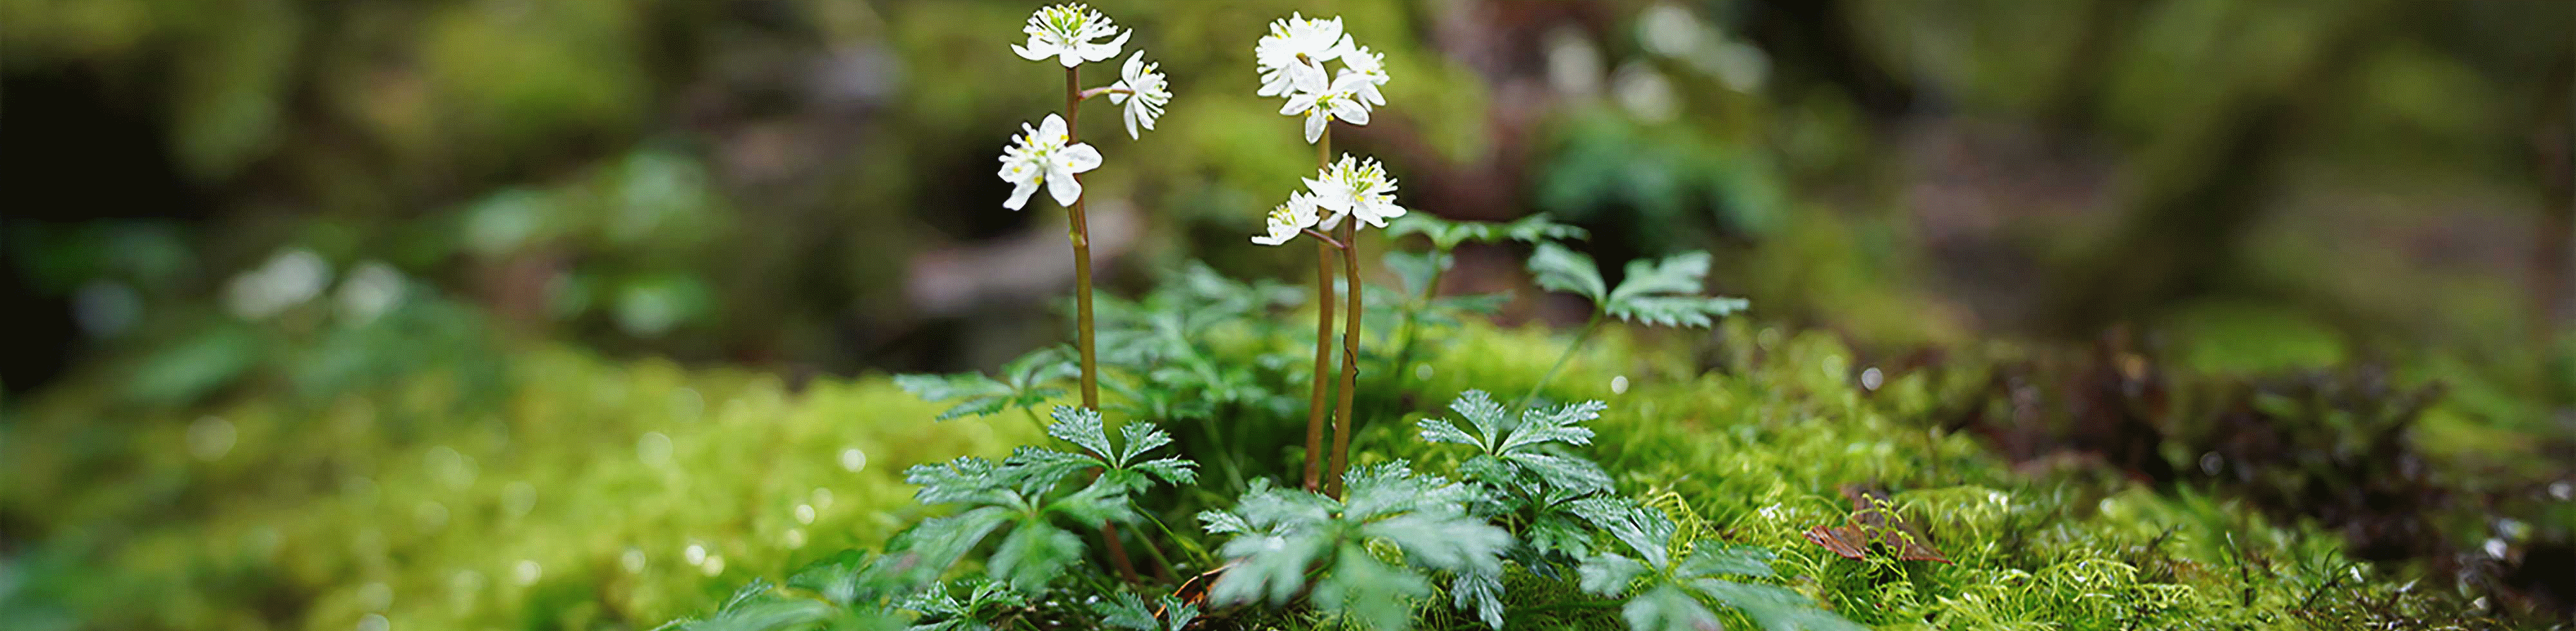 Billede af en lille blomst på en klippe i skoven – i fokus med et stort slør foran og bagved